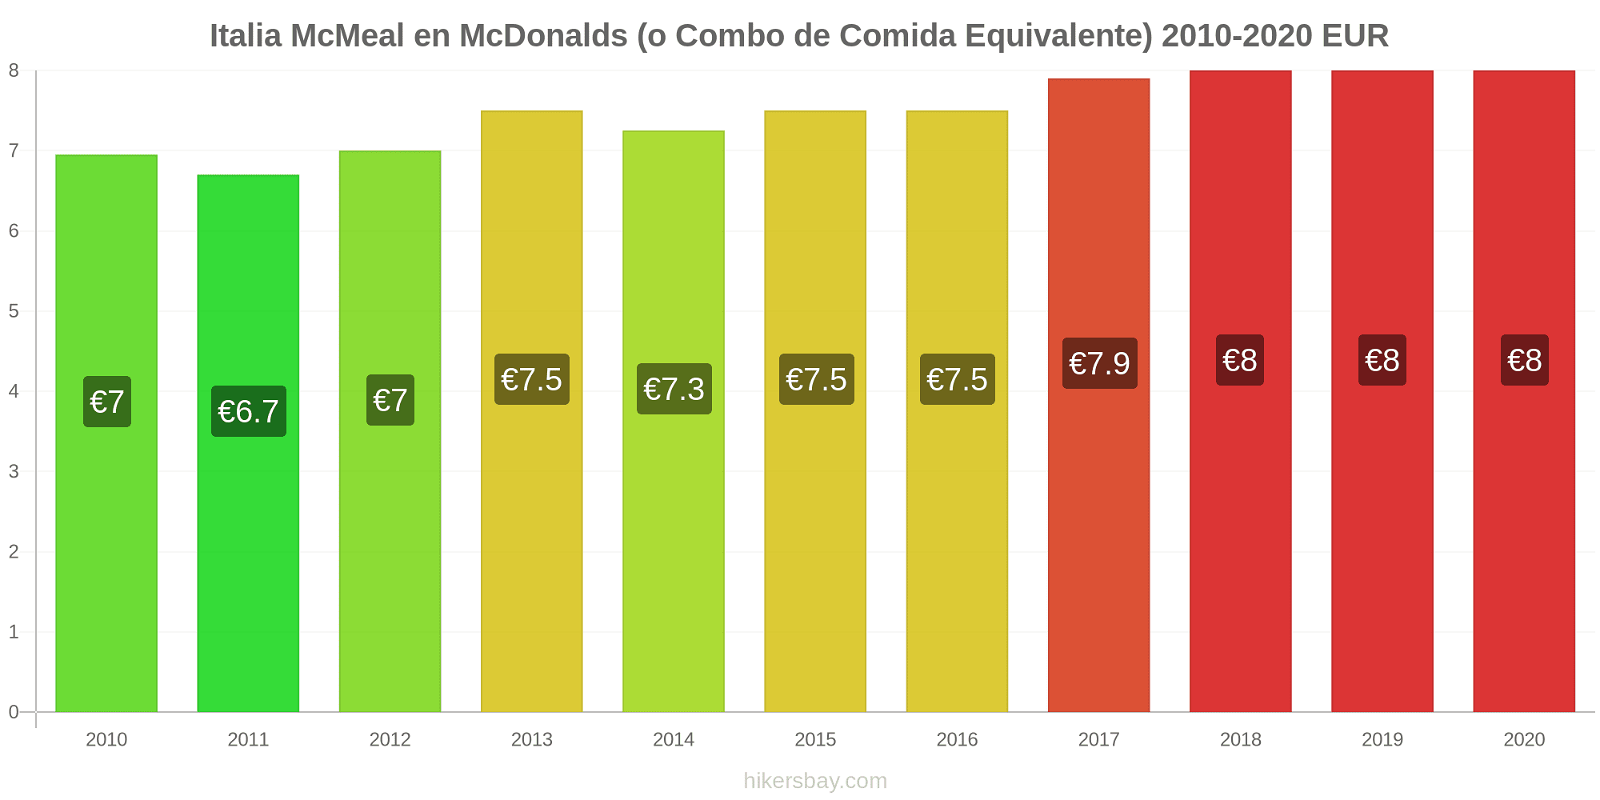 Italia cambios de precios McMeal en McDonalds (o menú equivalente) hikersbay.com